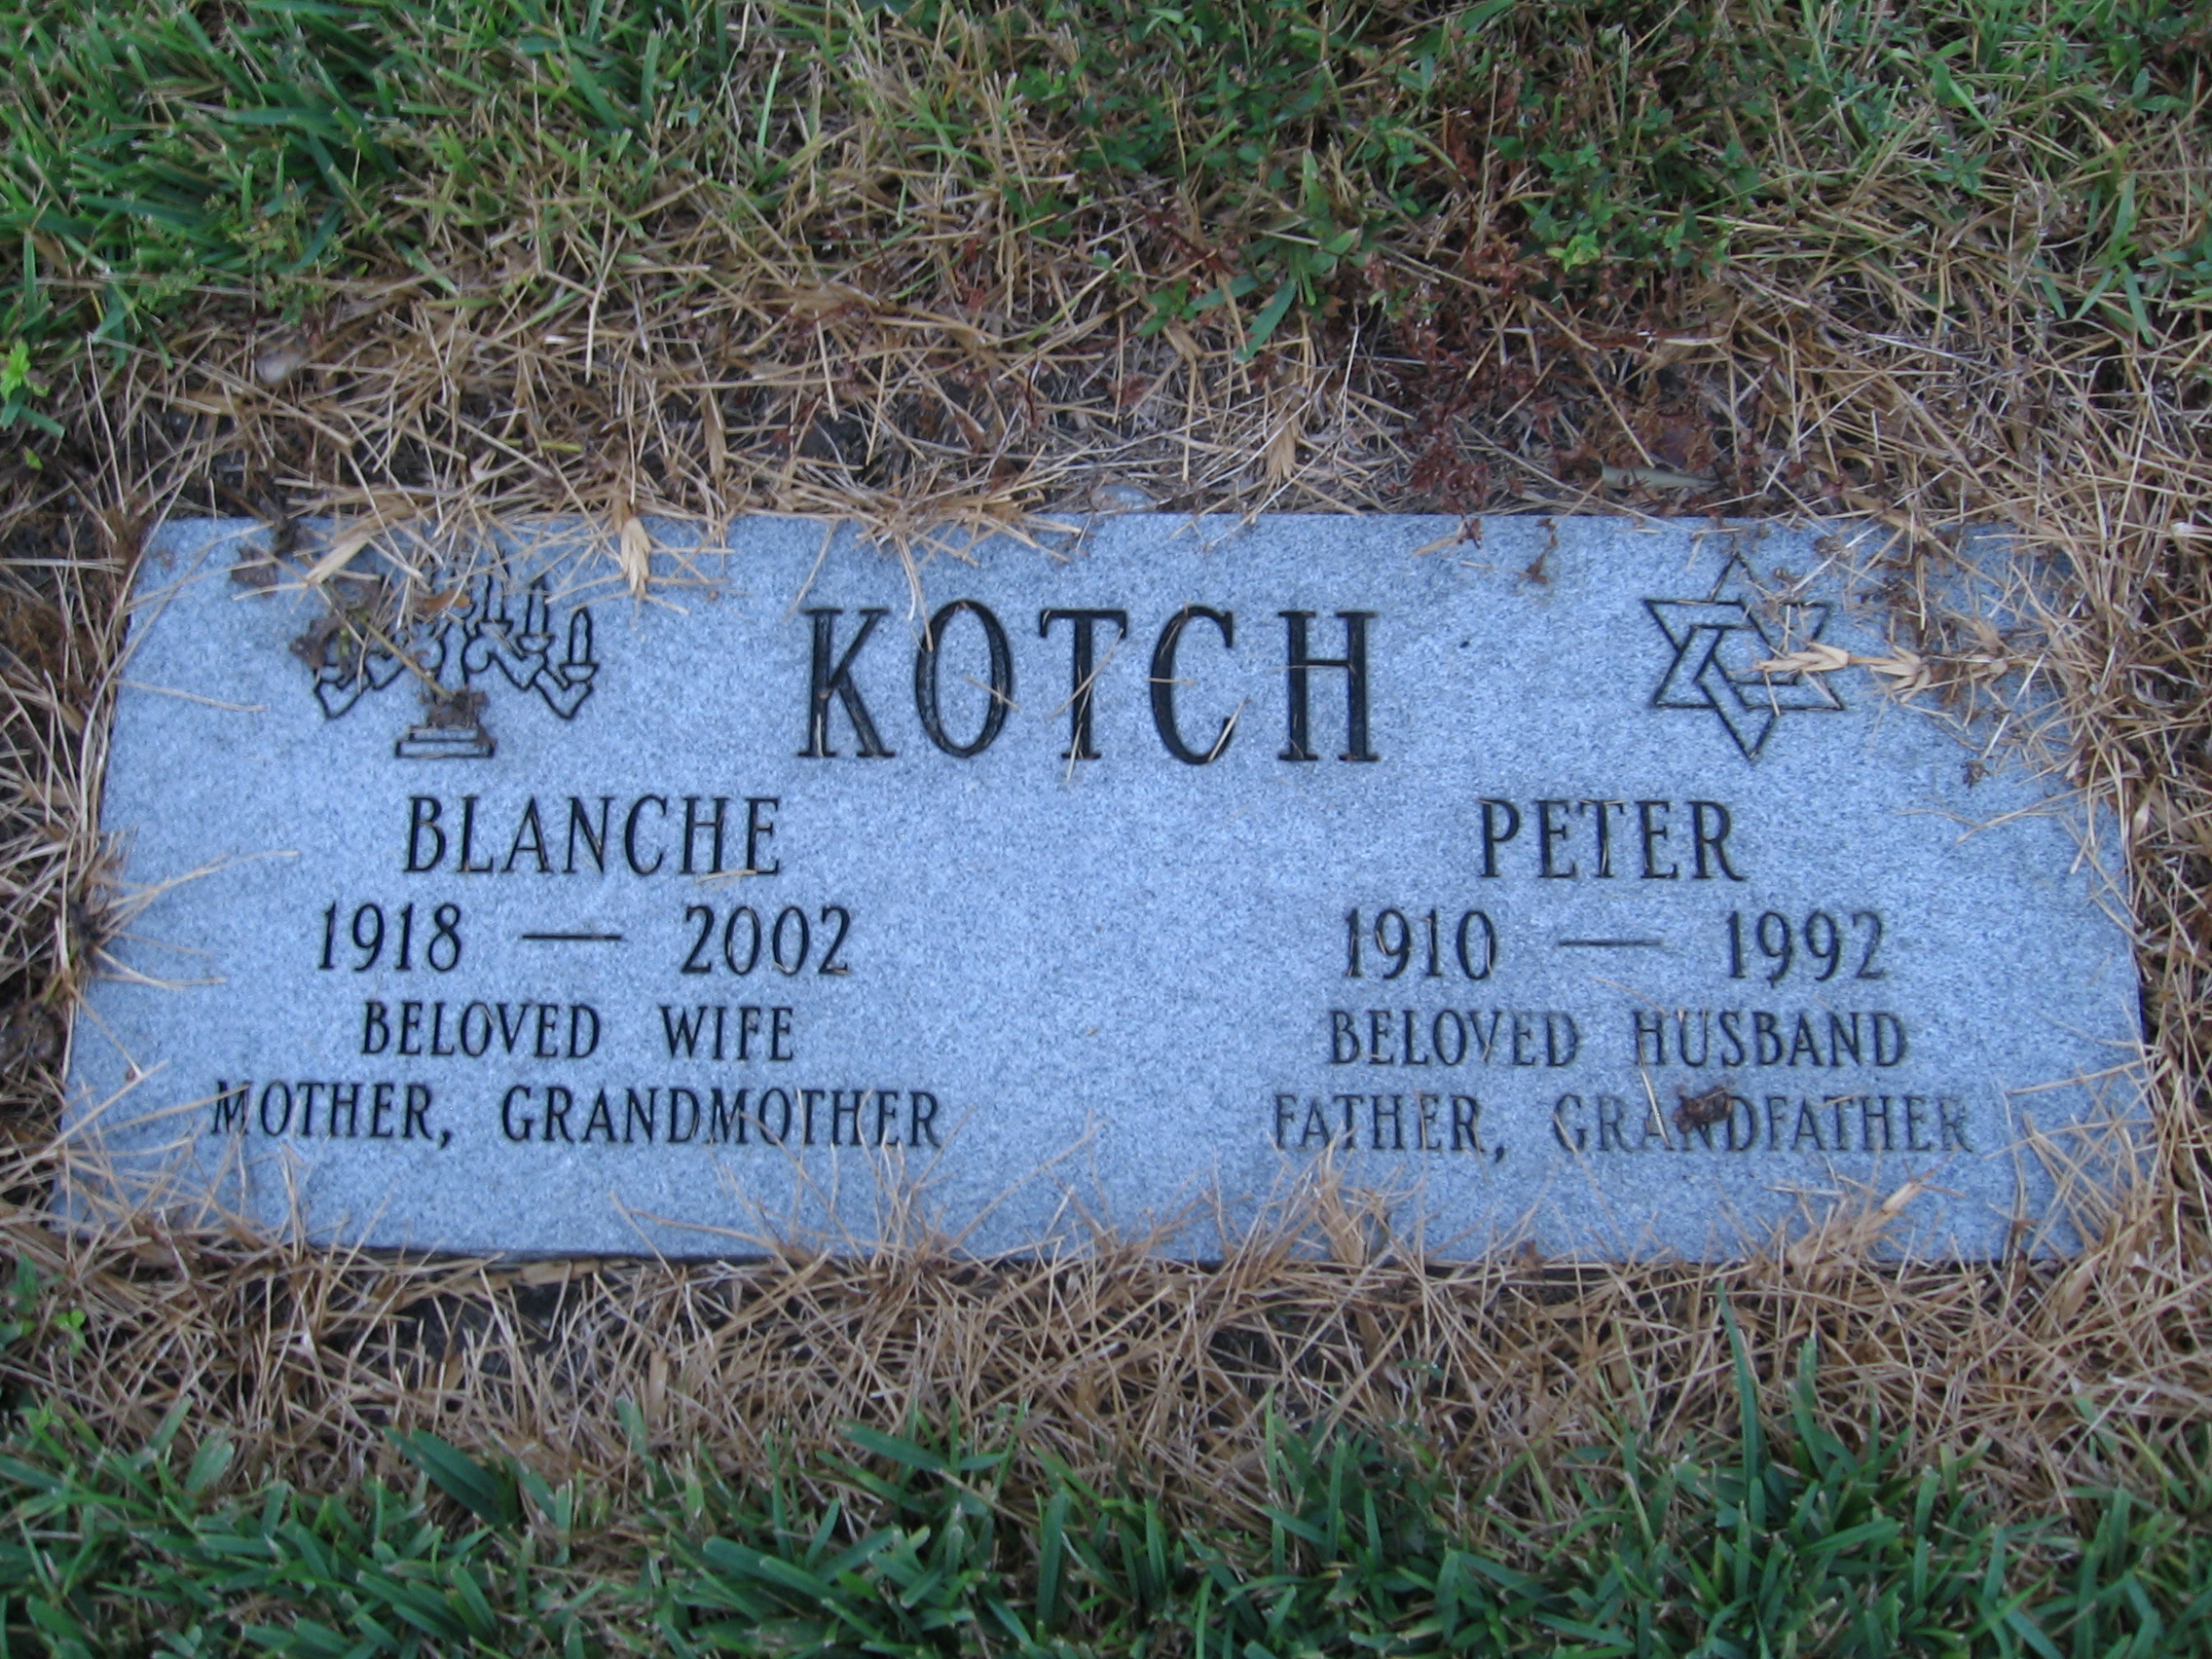 Peter Kotch